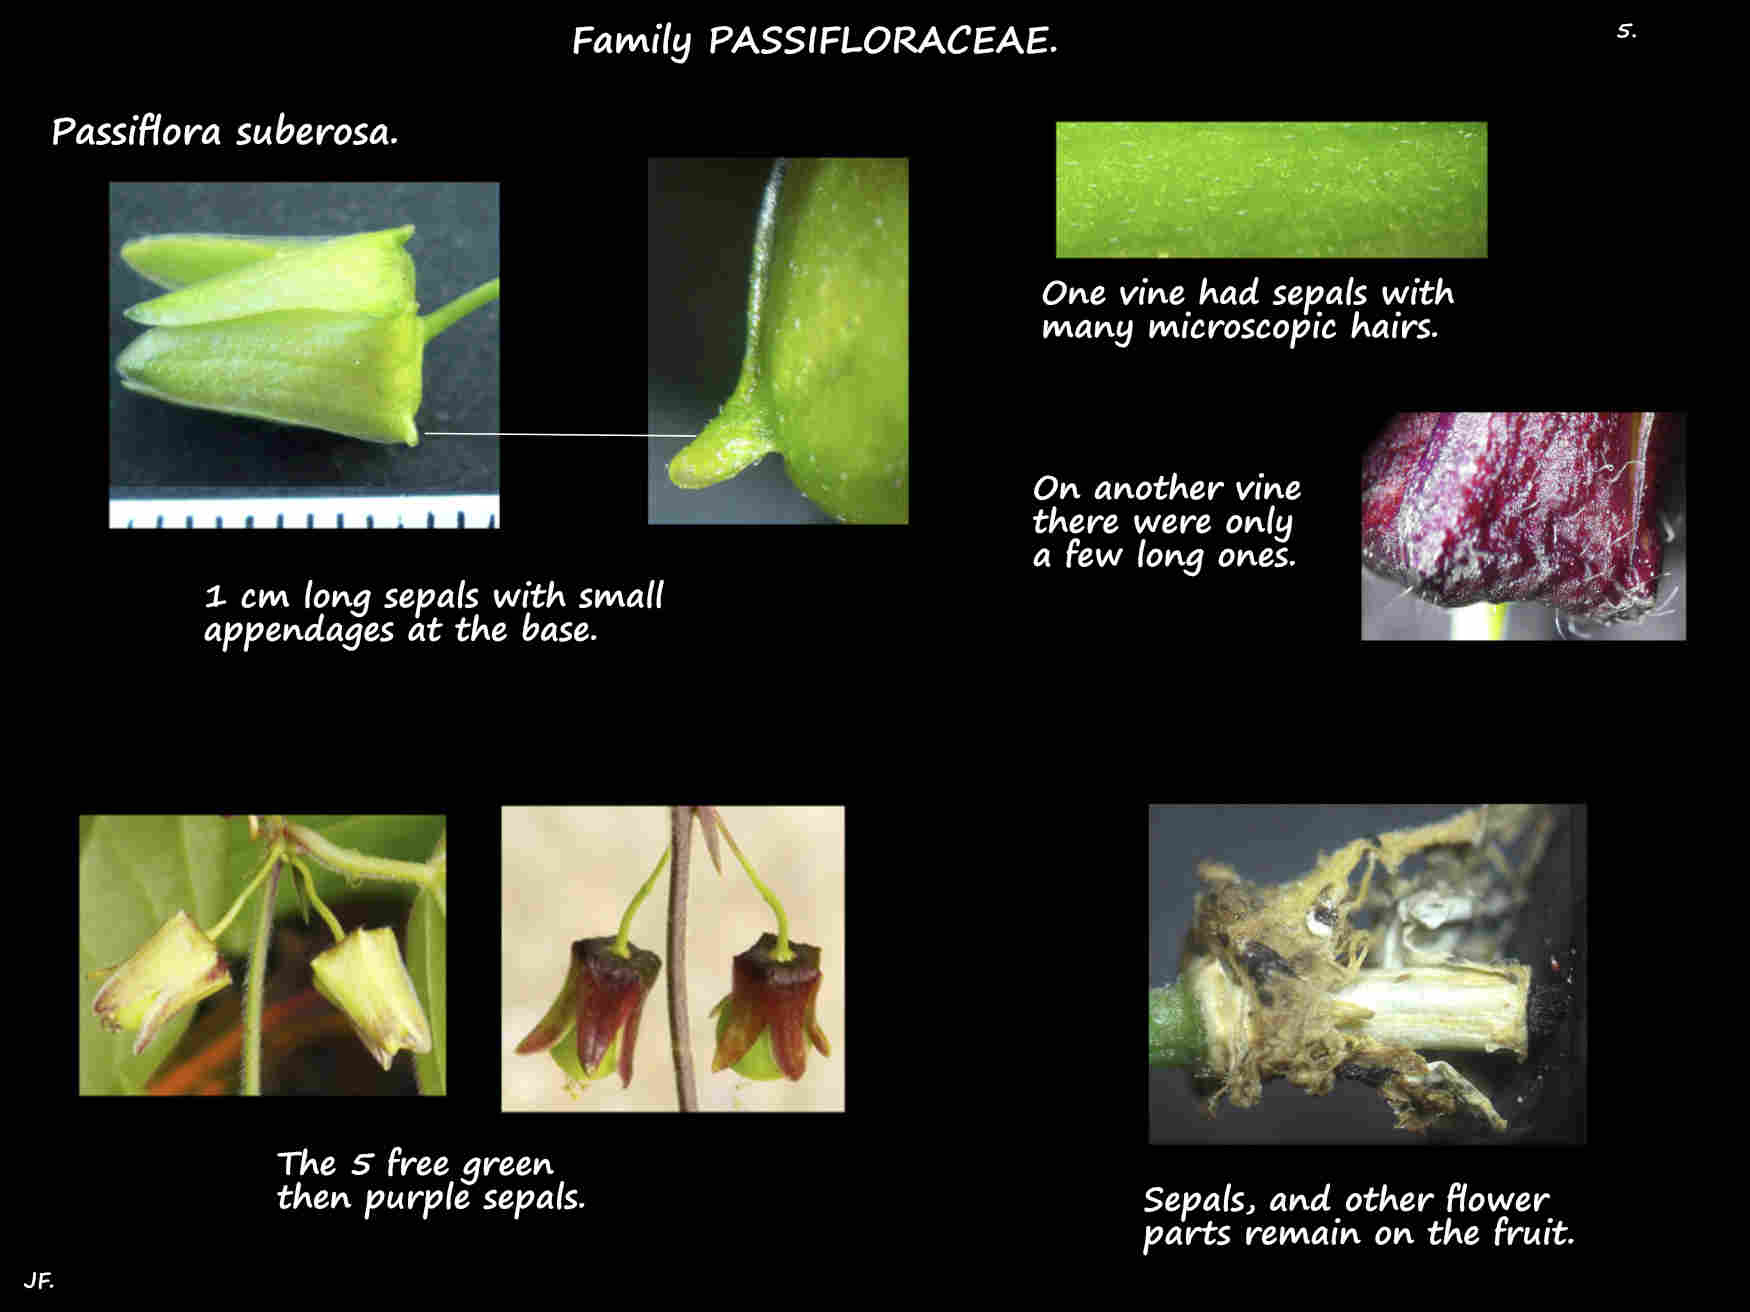 5 Passiflora suberosa sepals